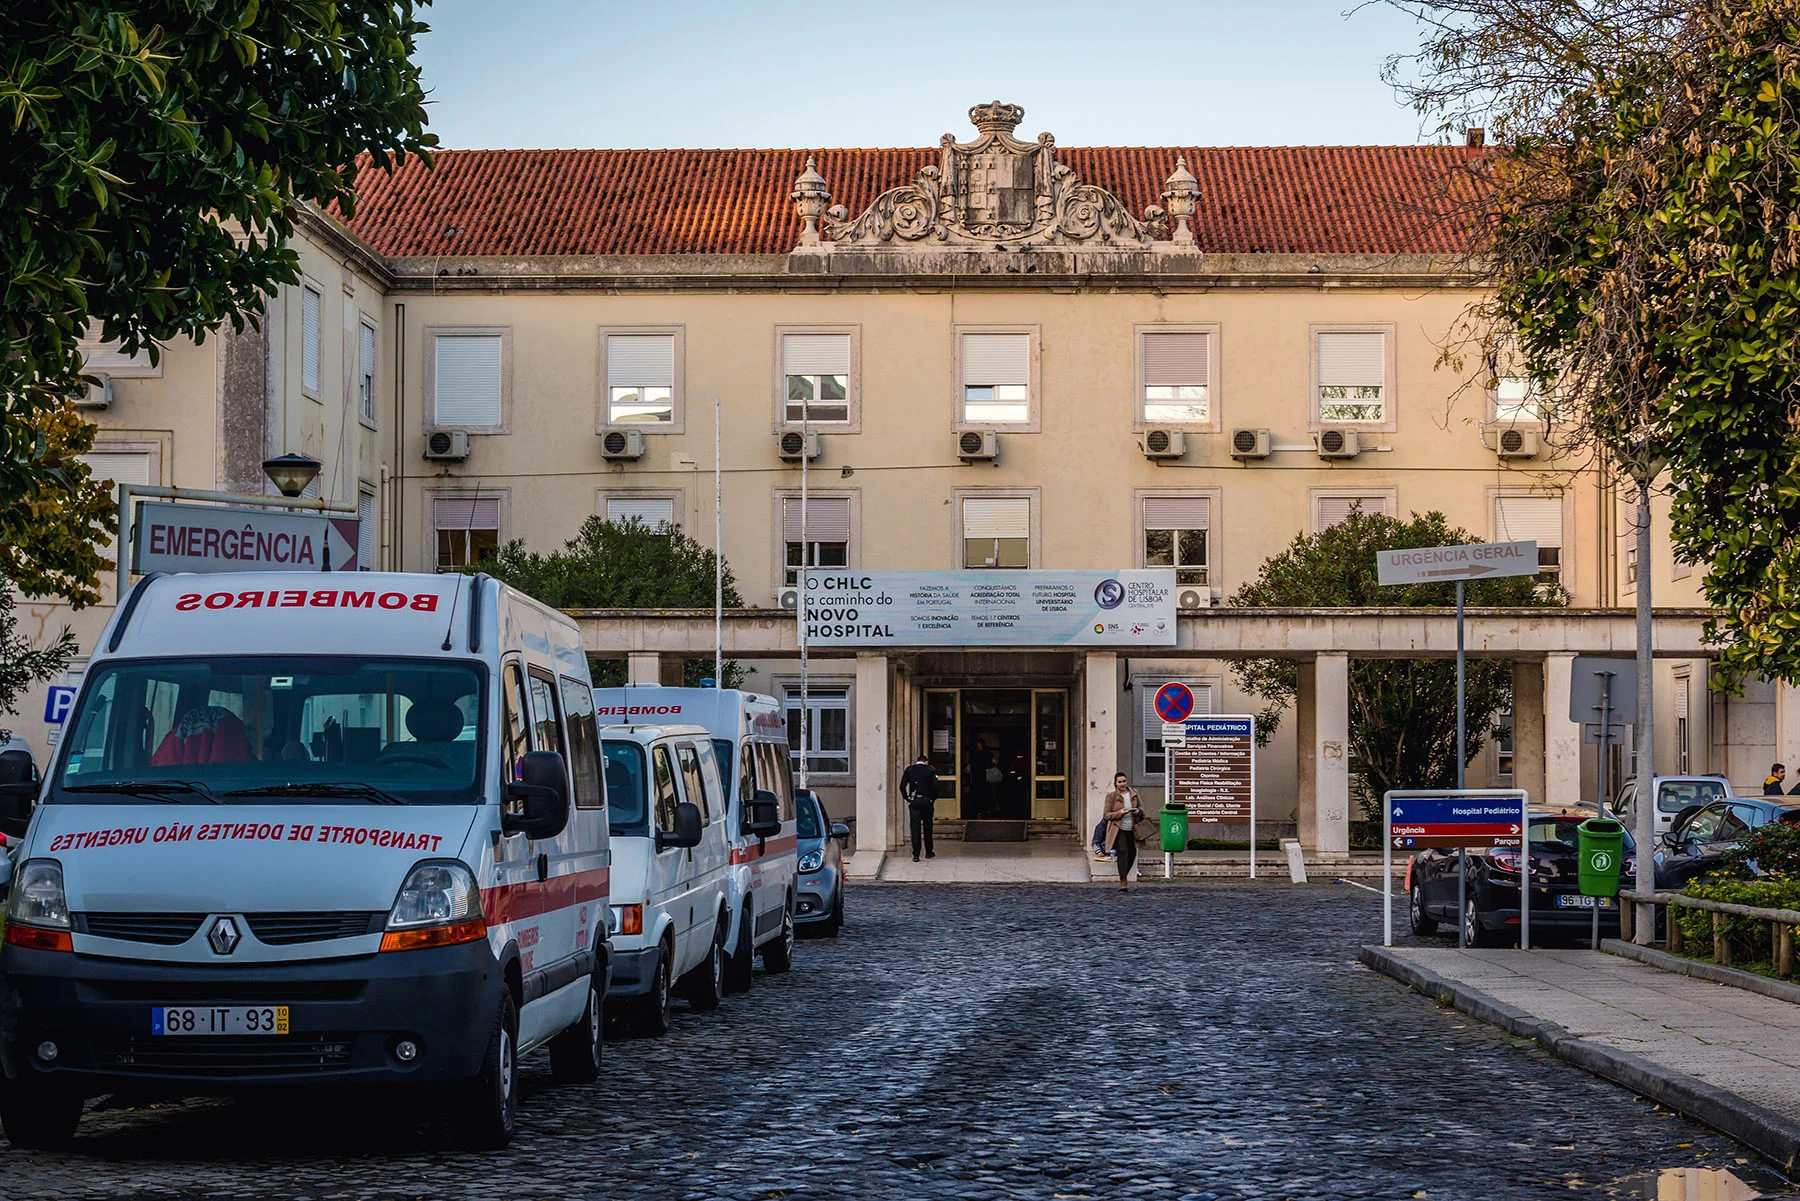 Santa Marta Hospital in Lisbon